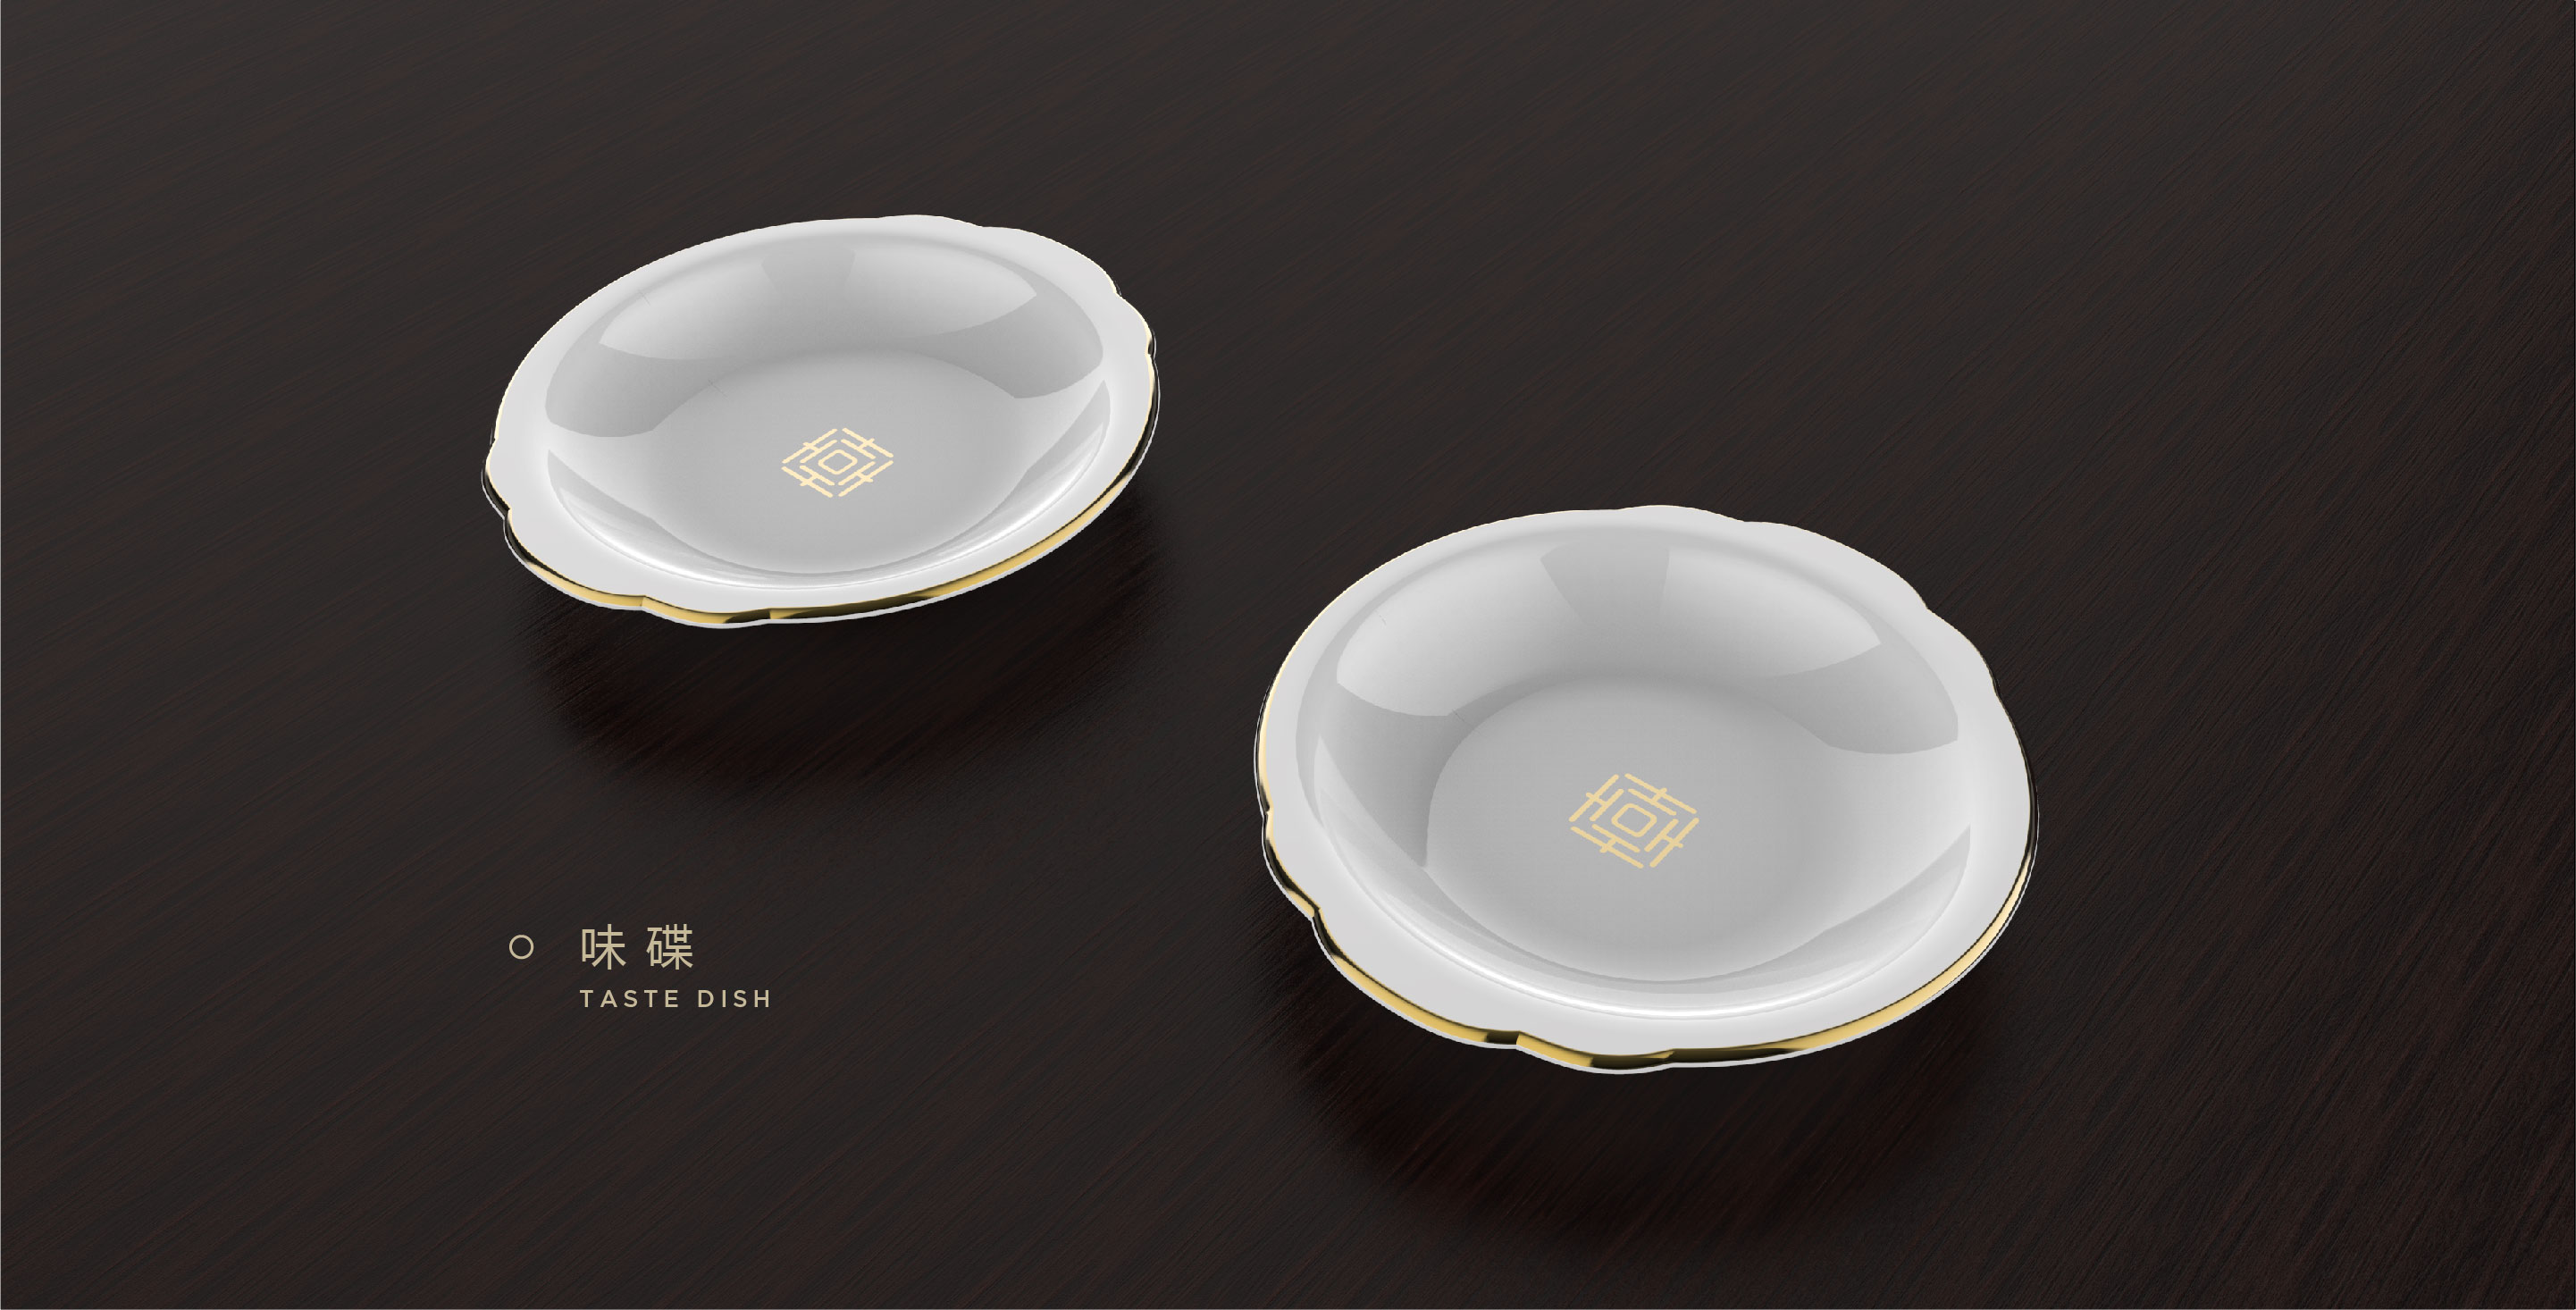 中国(海南)南海博物馆吉字餐具套装设计